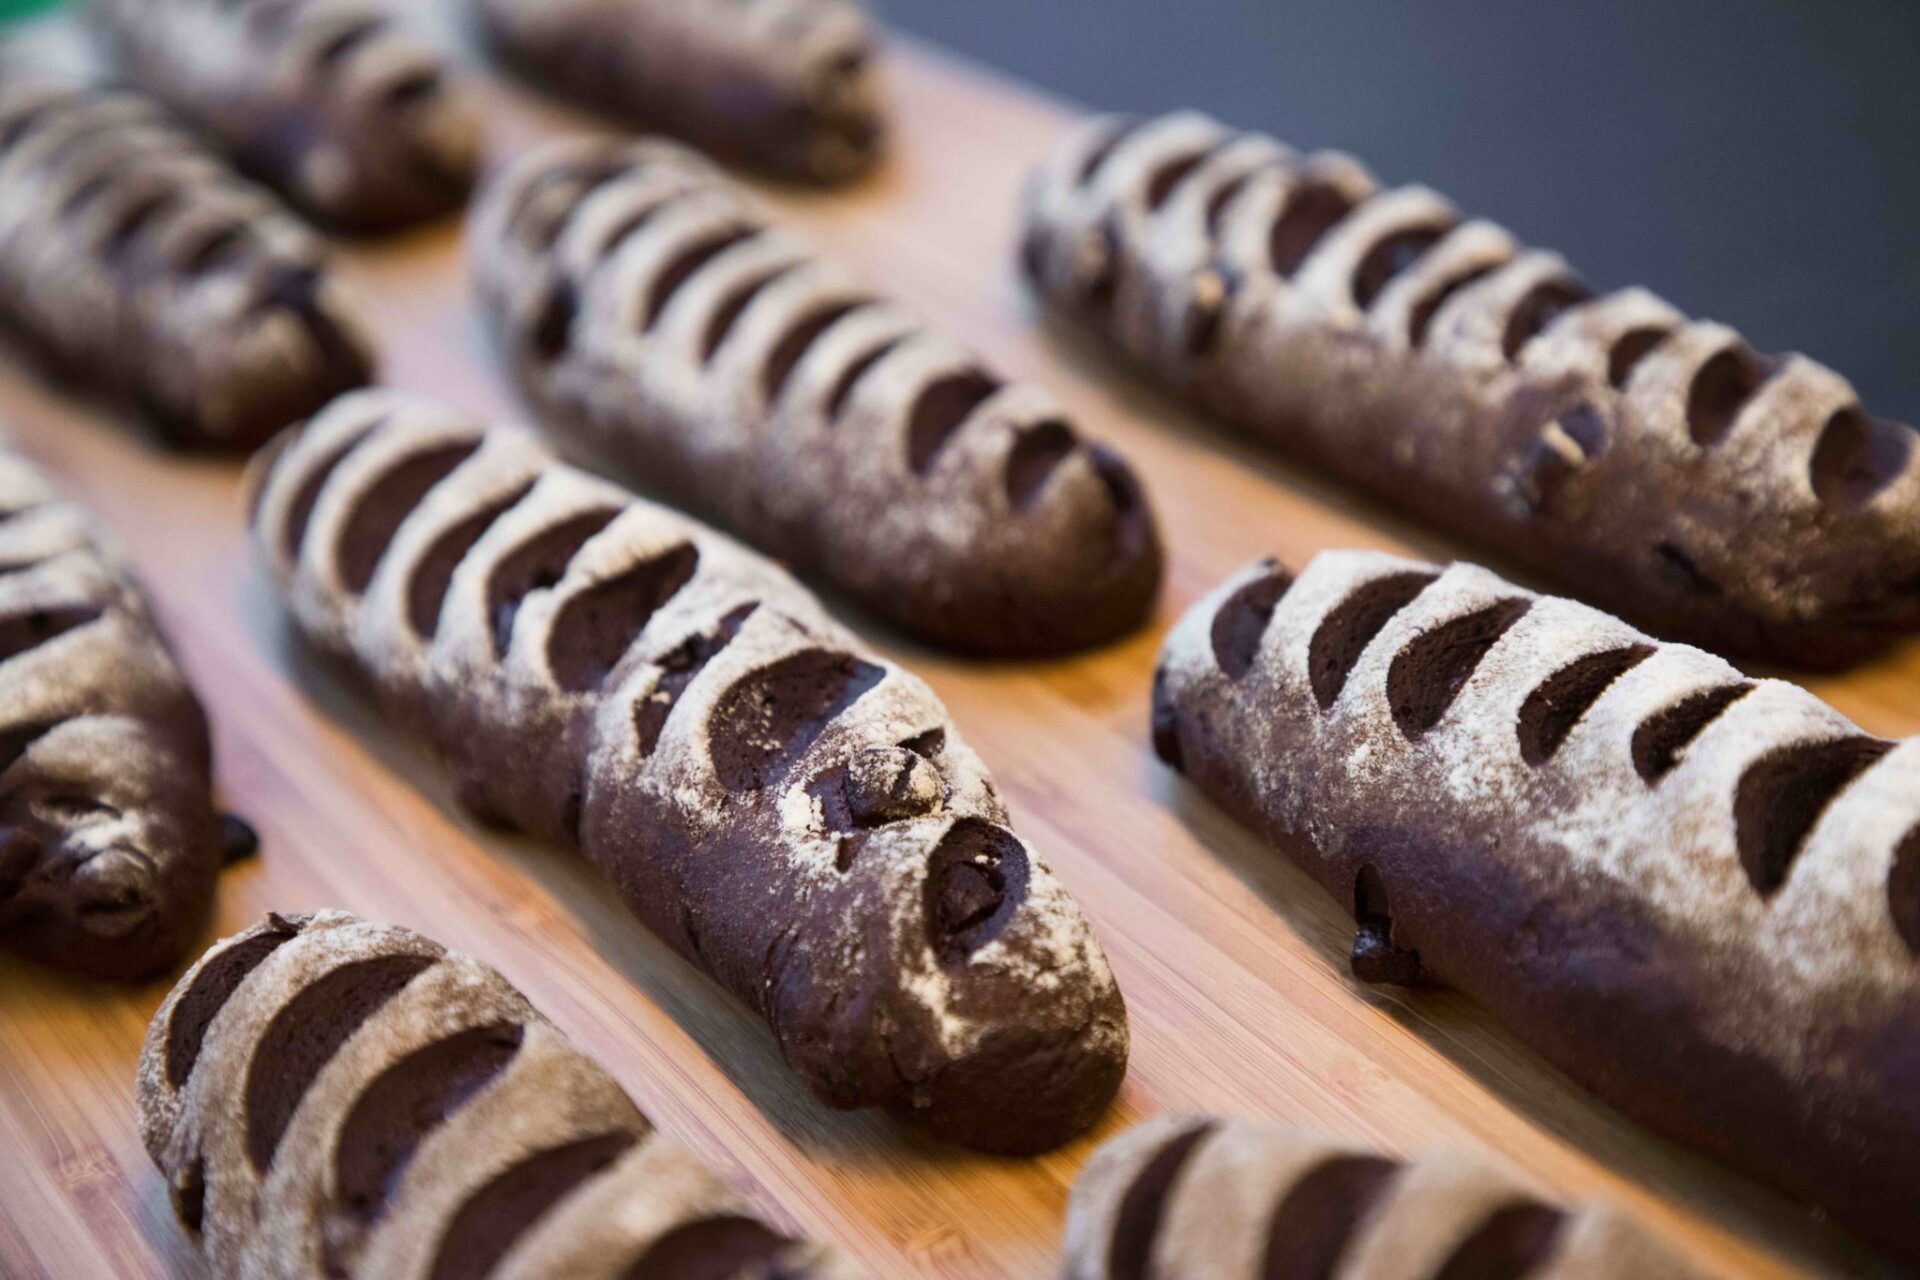 Chocolate Academy per Milano Food City presenta la ricetta Pane & Cioccolato a basso contenuto calorico - Sapori News 